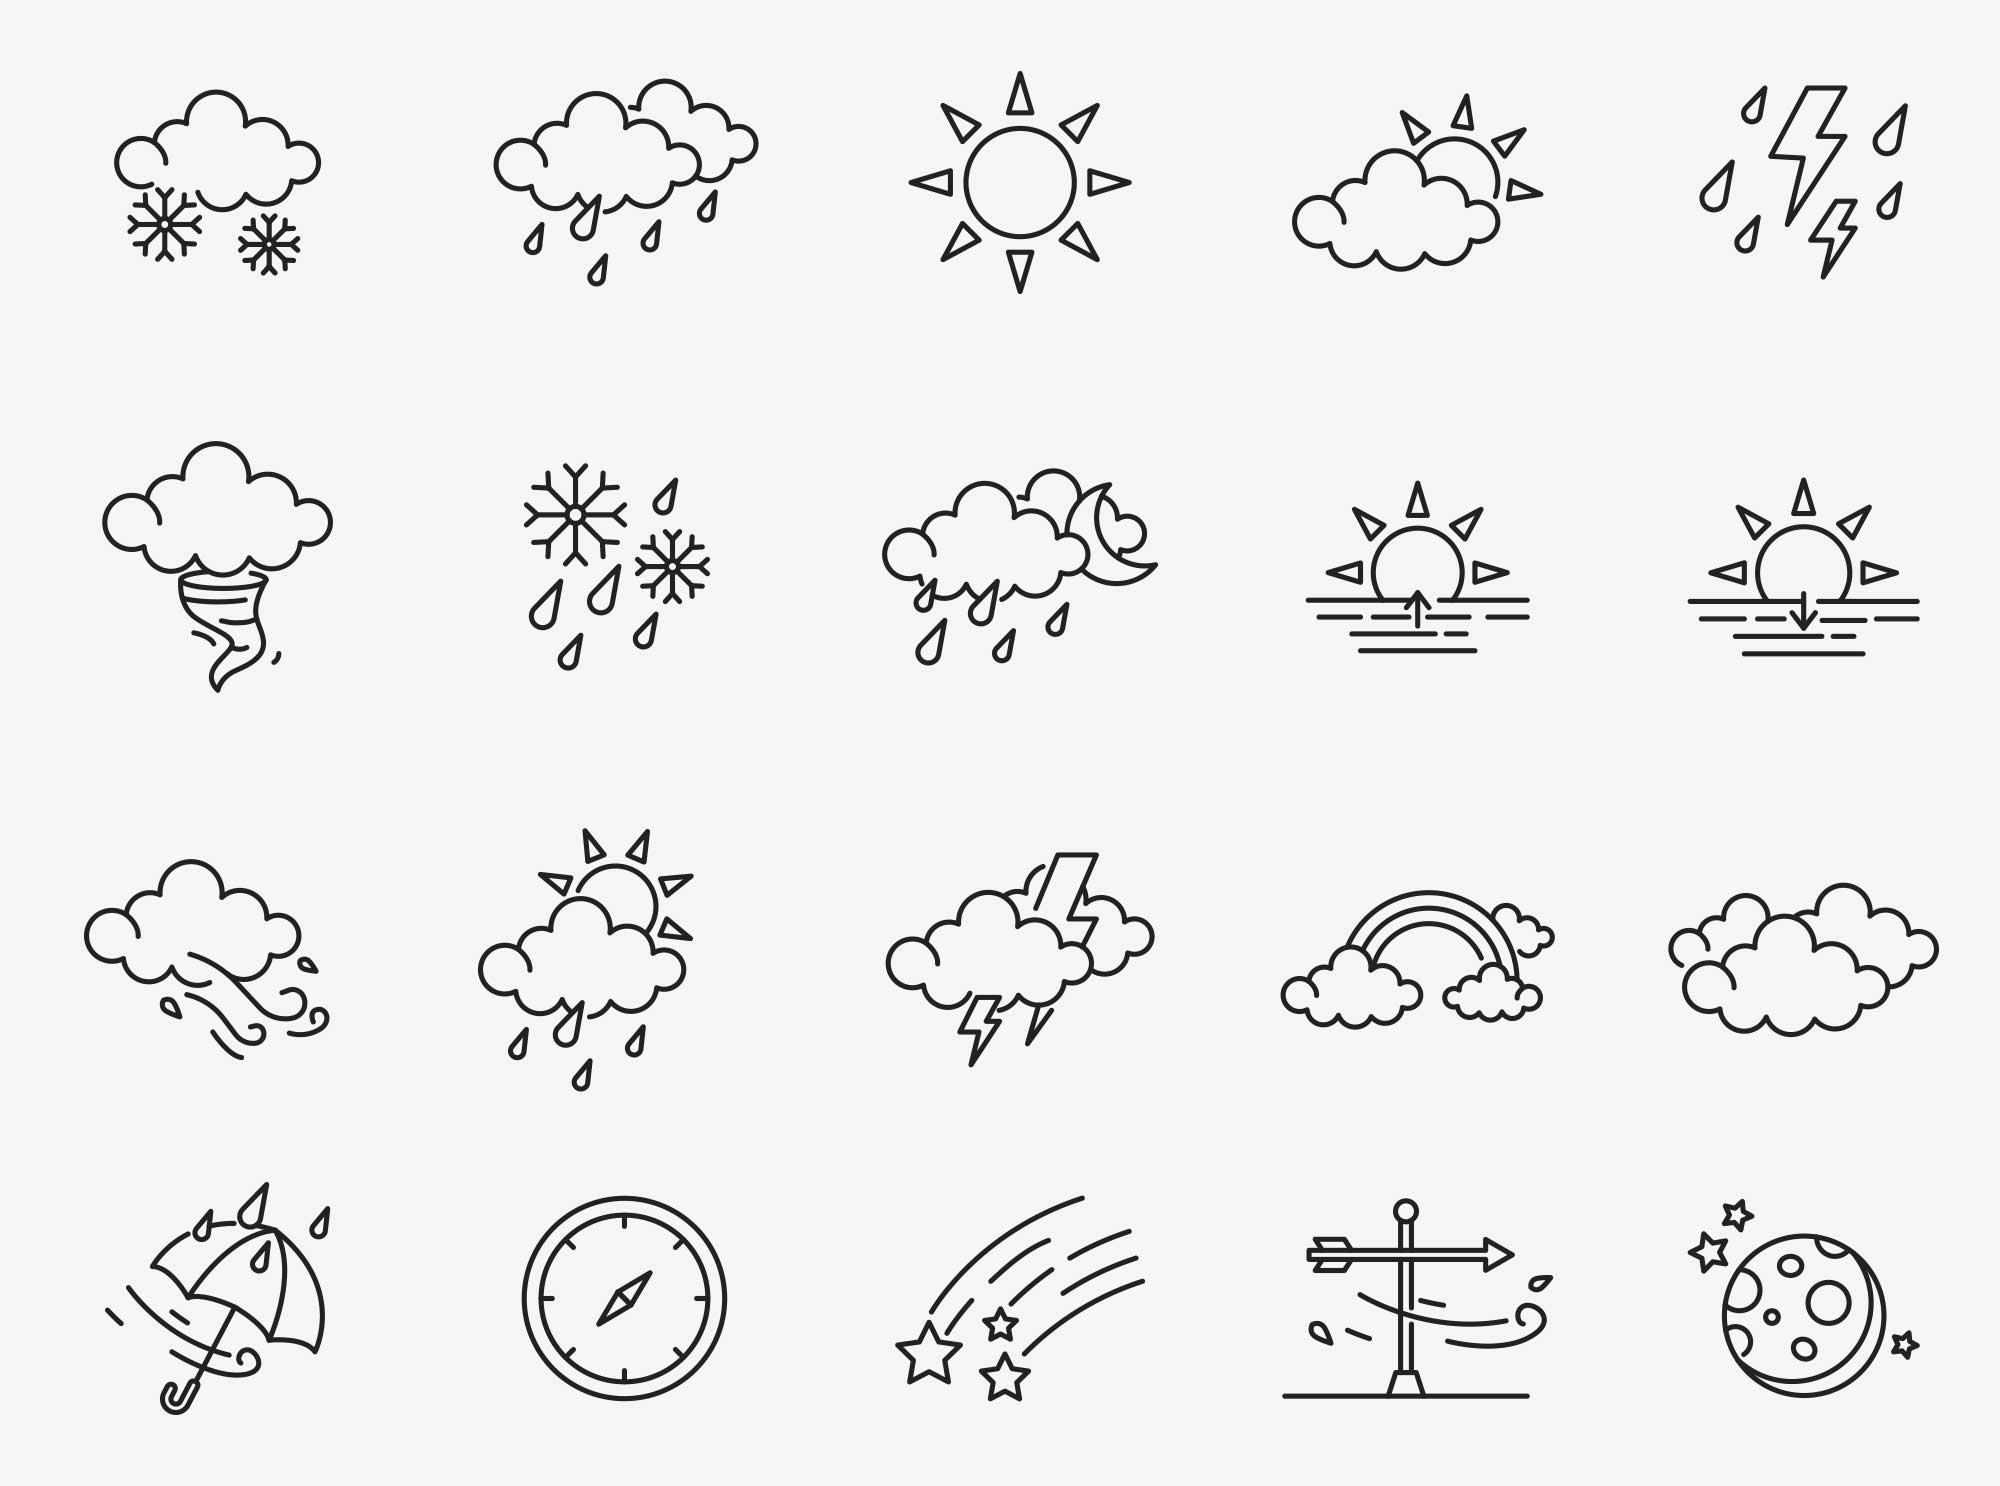 80个天气矢量图标 80 Weather Vector Icons 图标素材 第1张